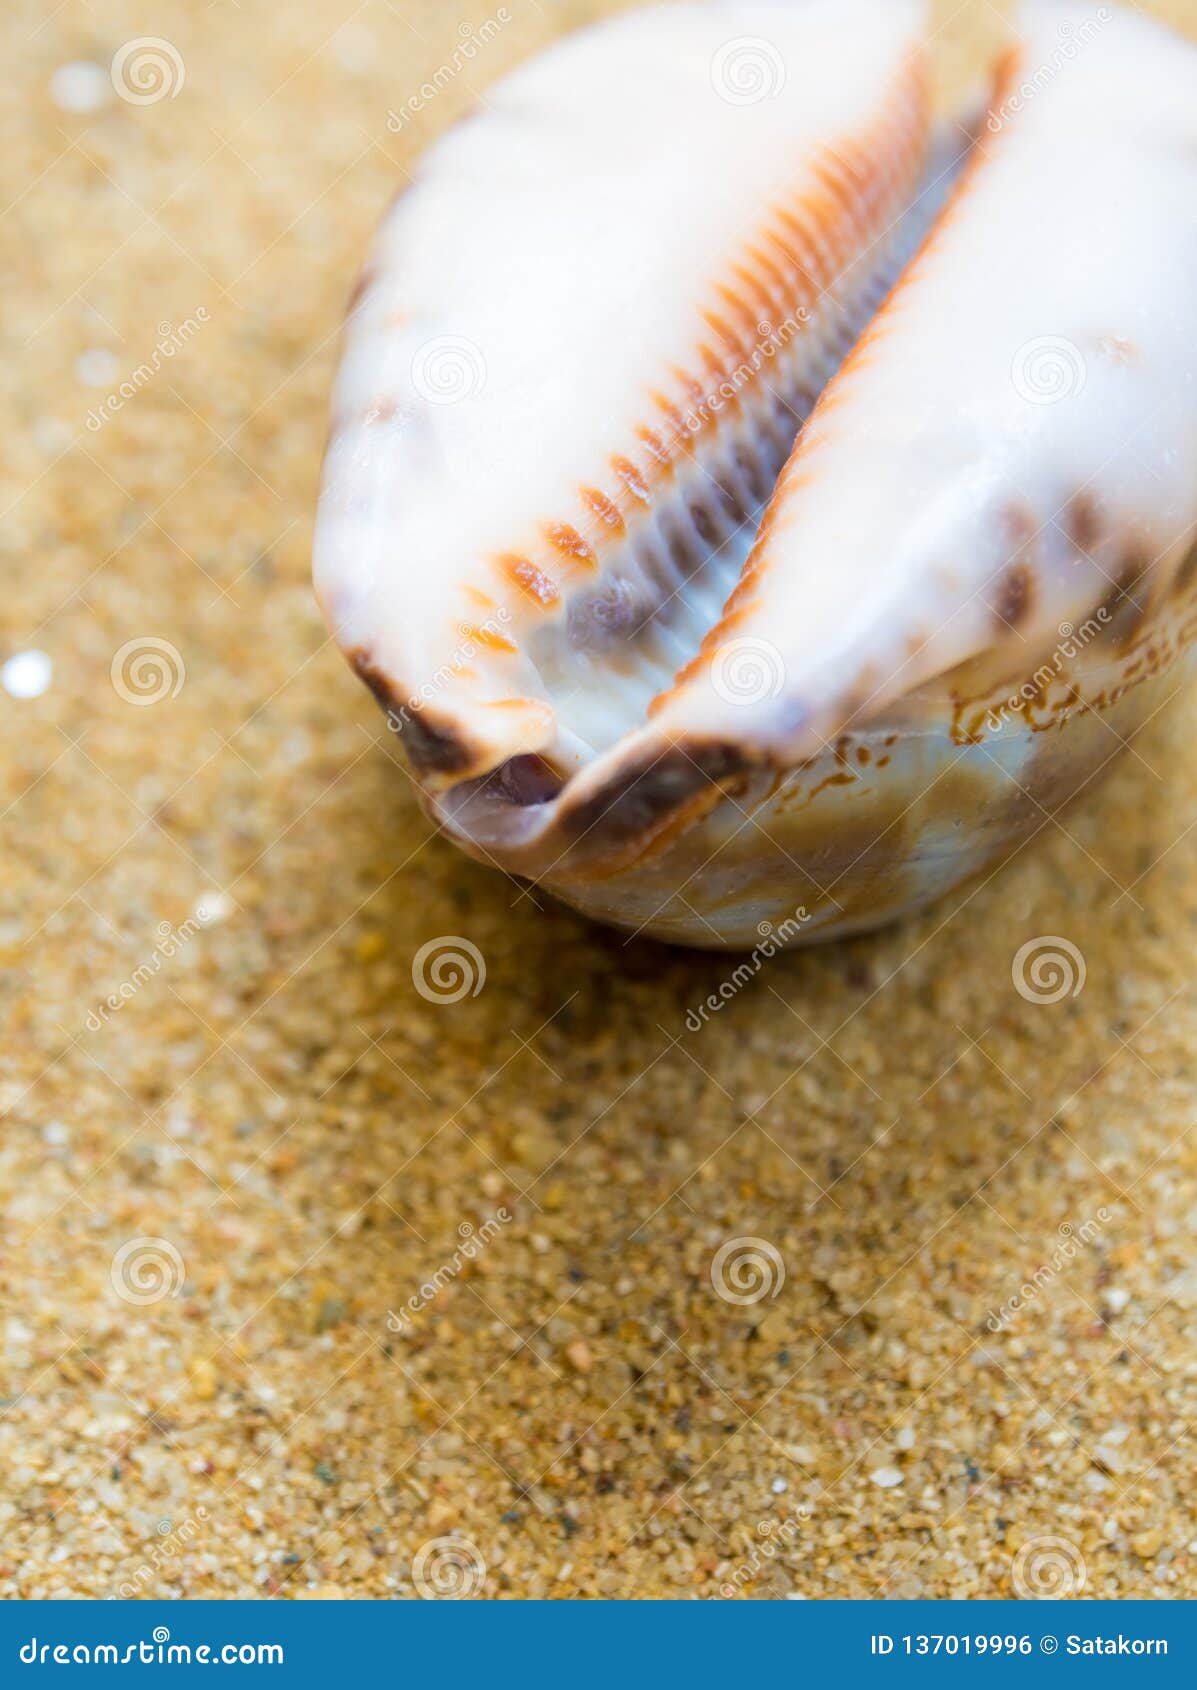 dried monetaria moneta shell on beach